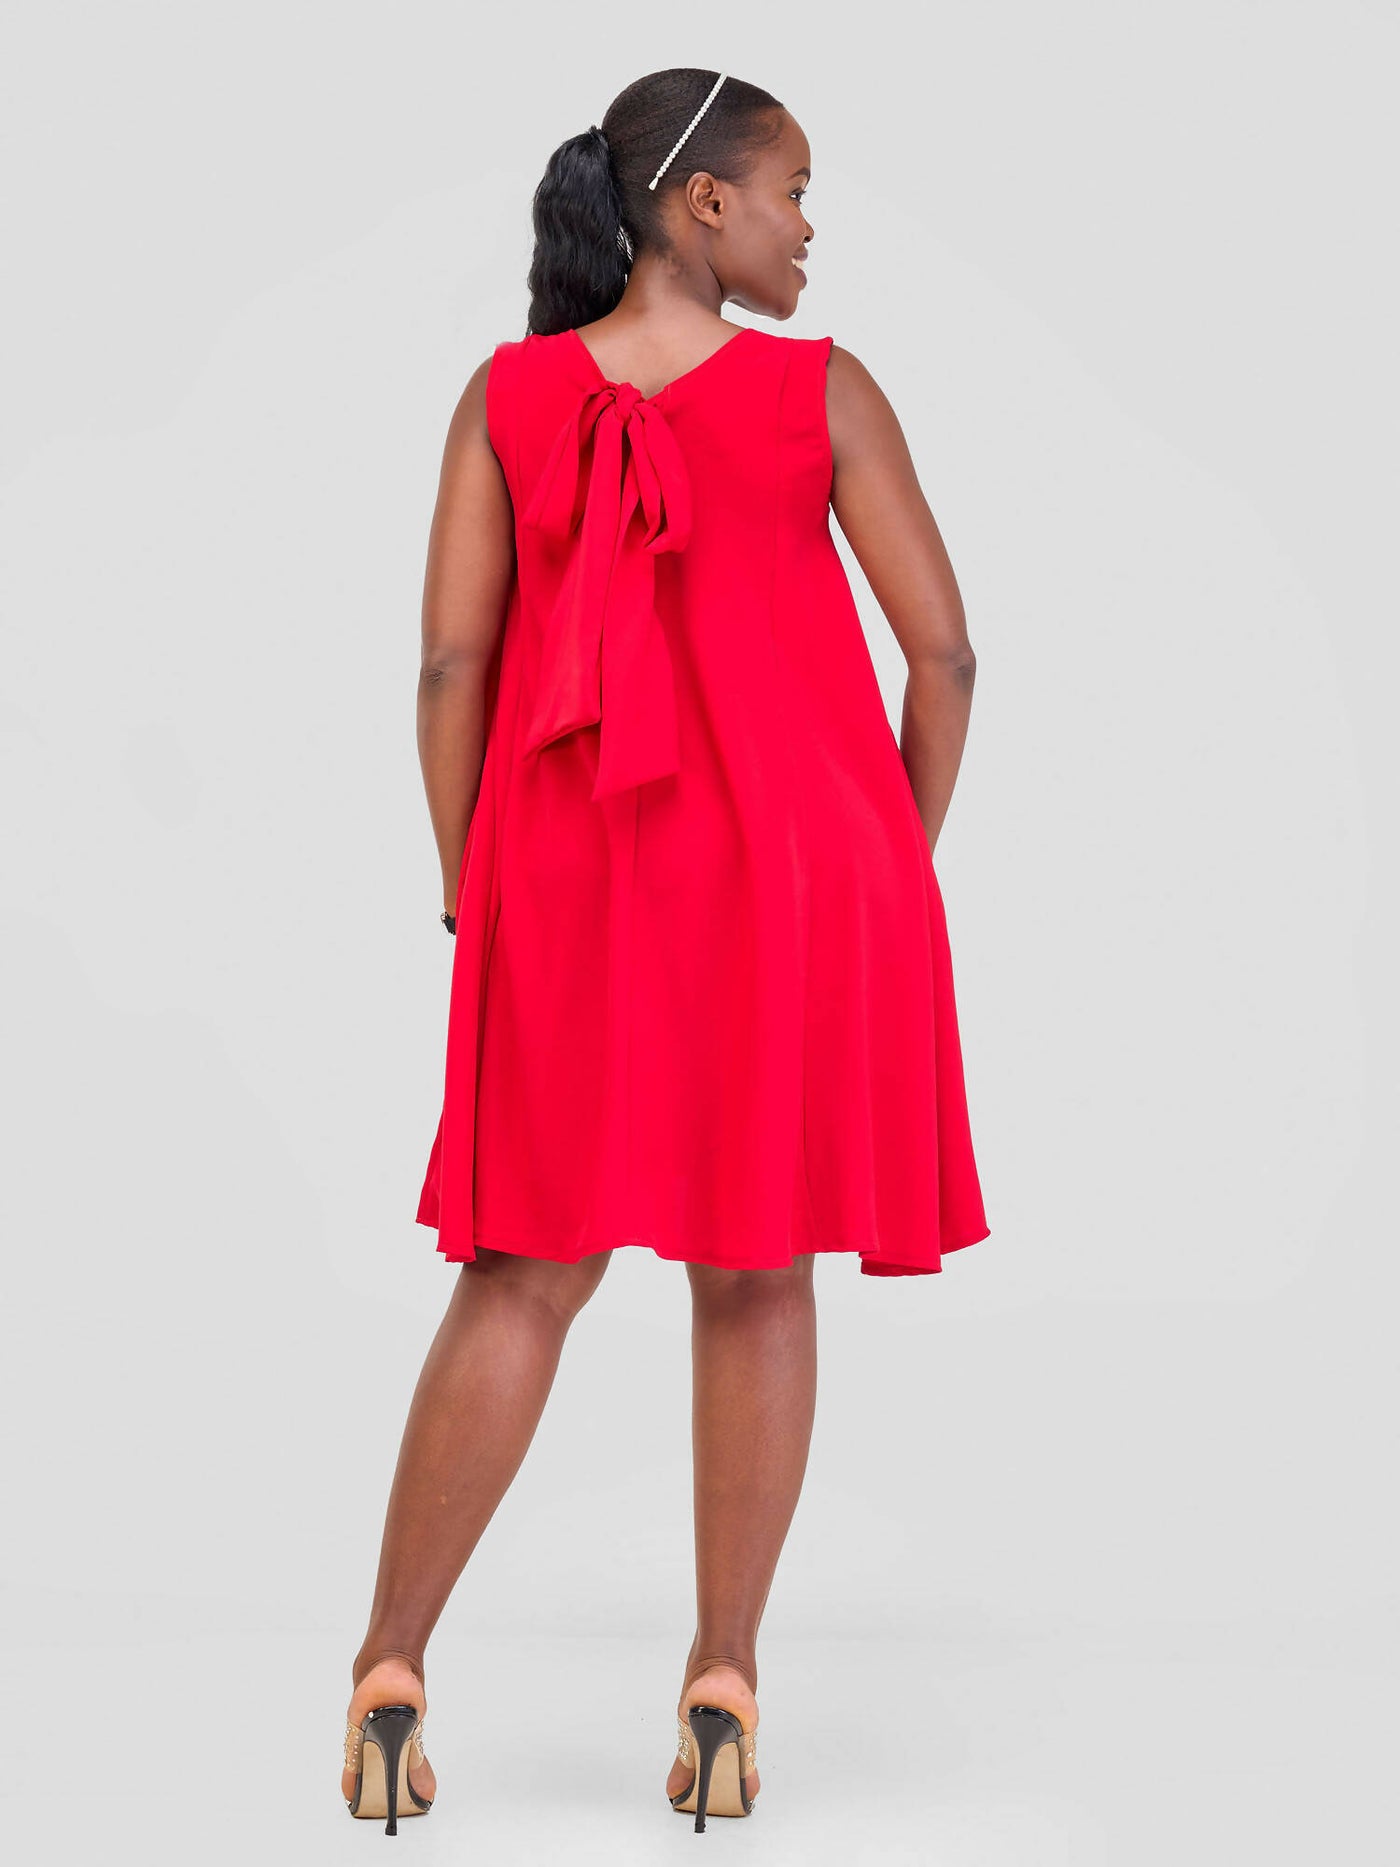 Mnubistyle Sekina Dress - Red